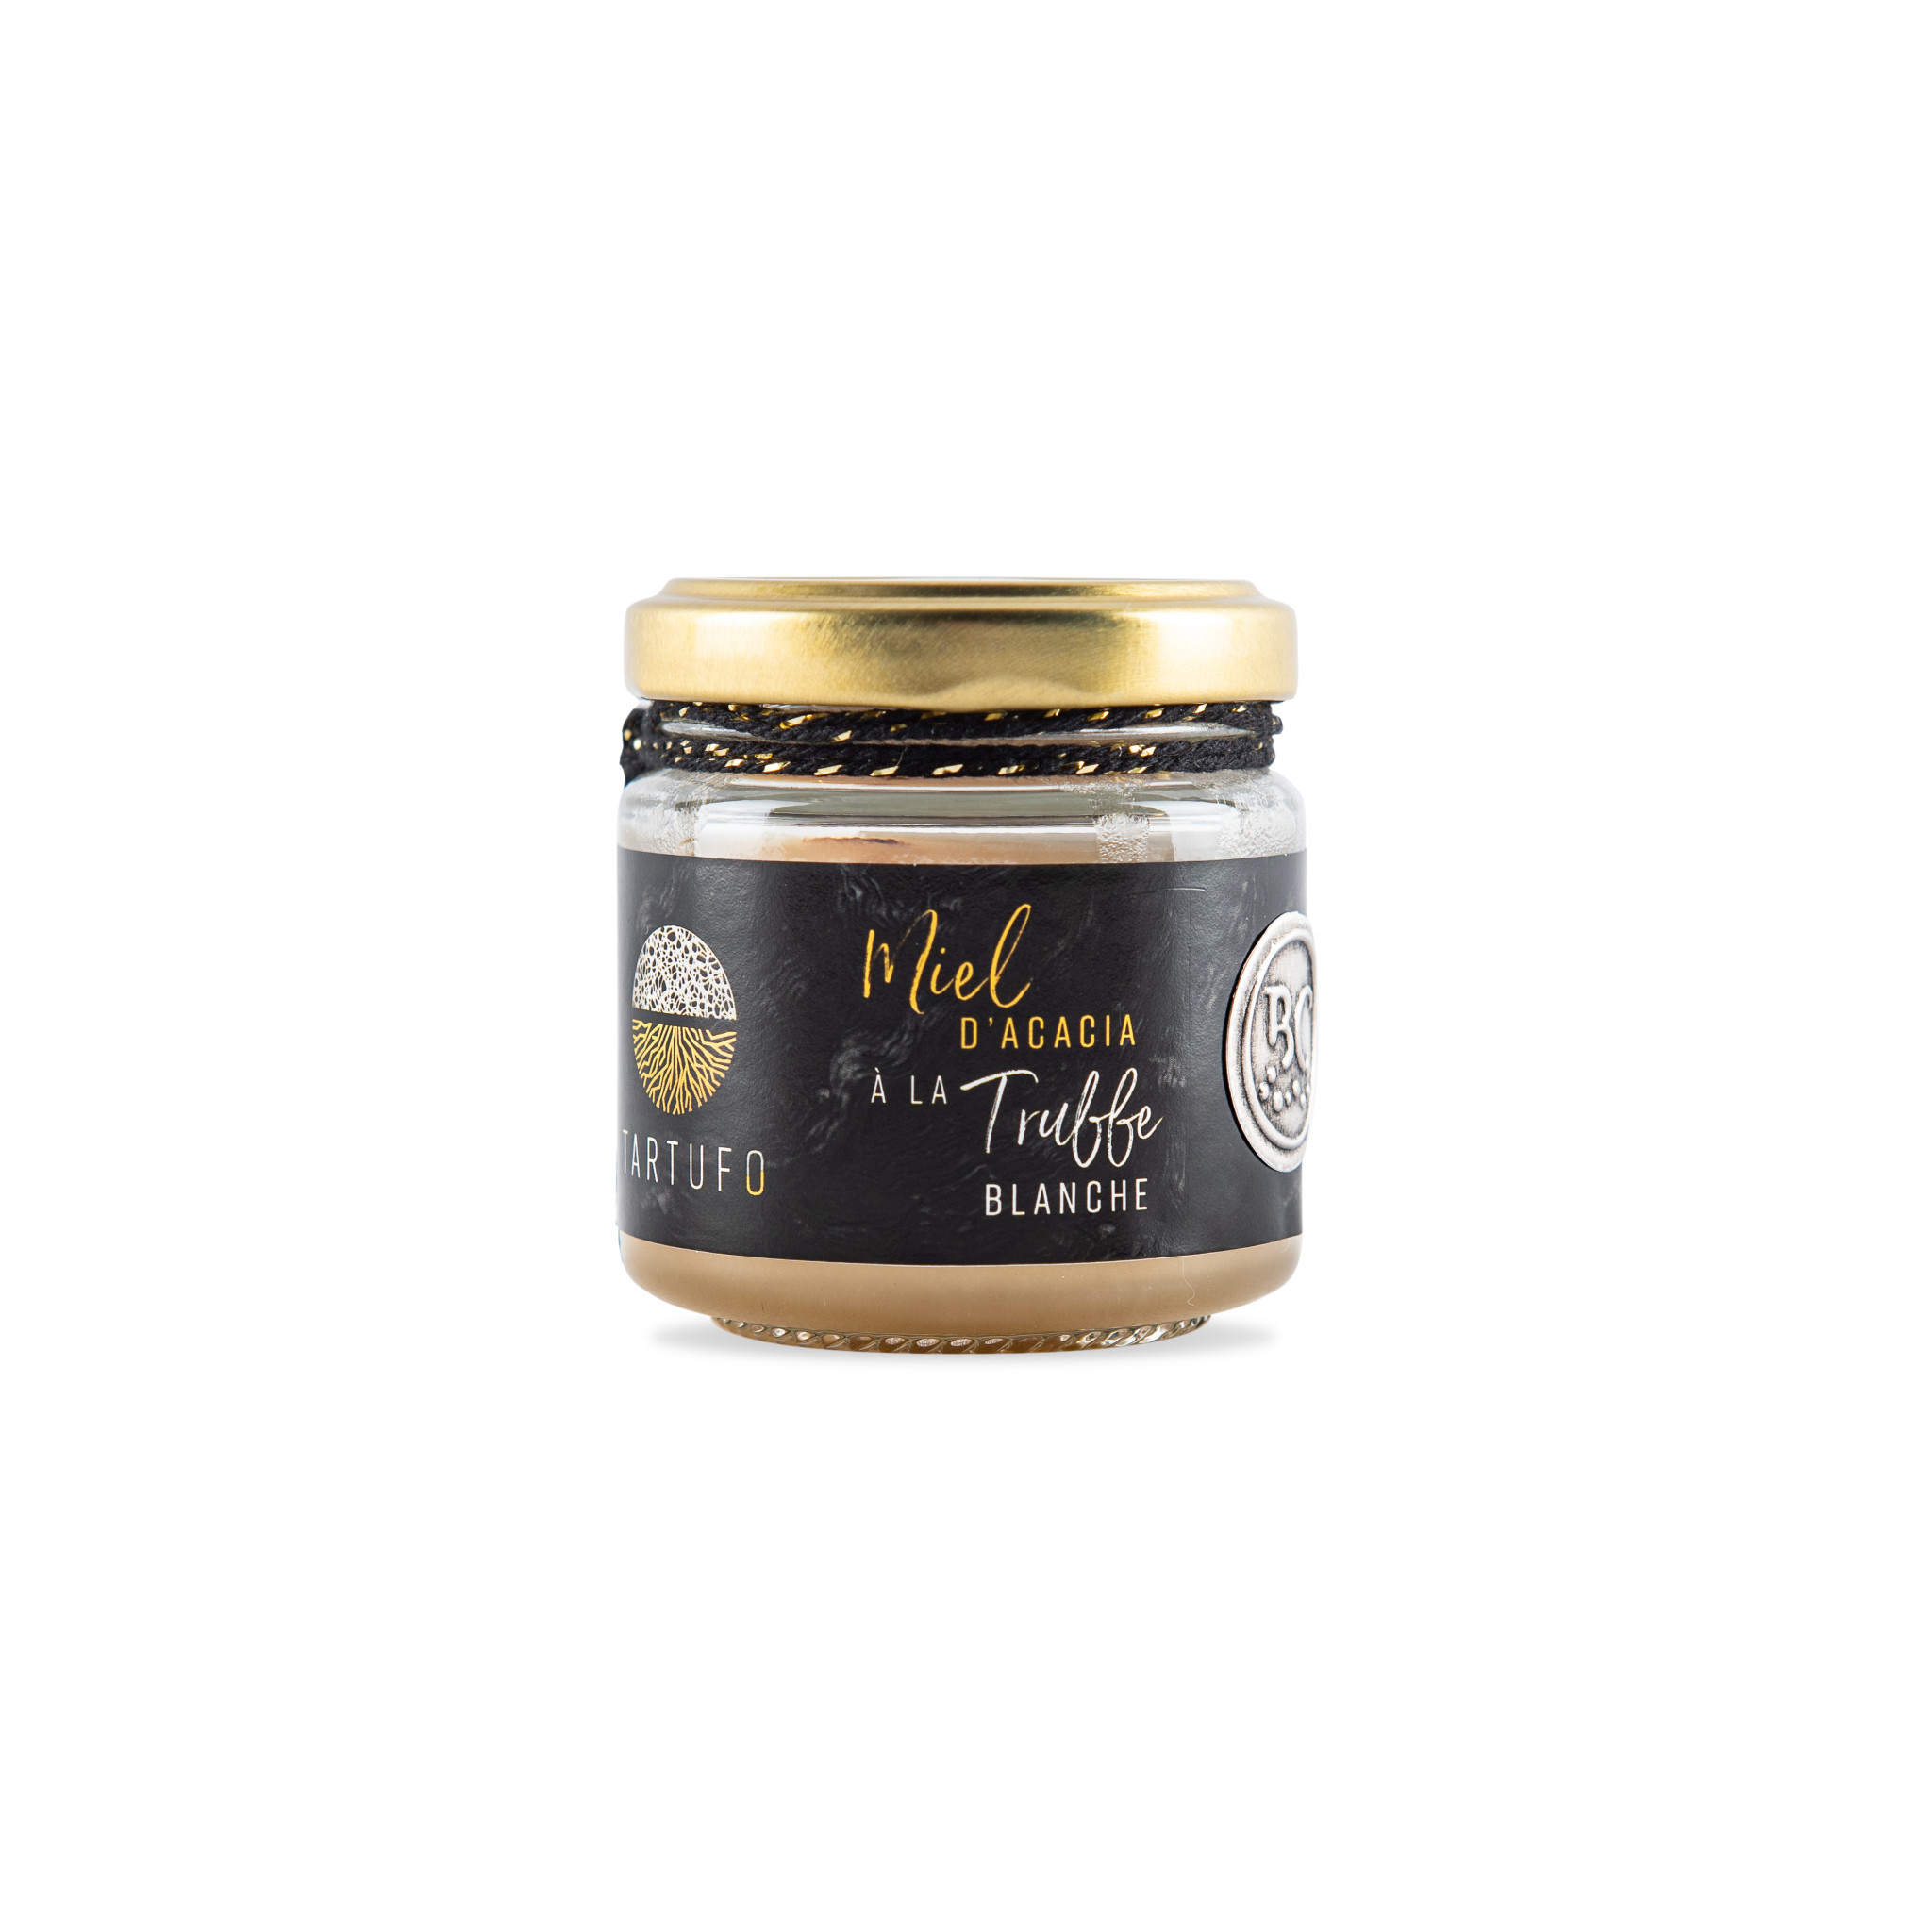 Miele di acacia al tartufo bianco (tuber magnatum pico) - 80 g - Bianca  Collina®